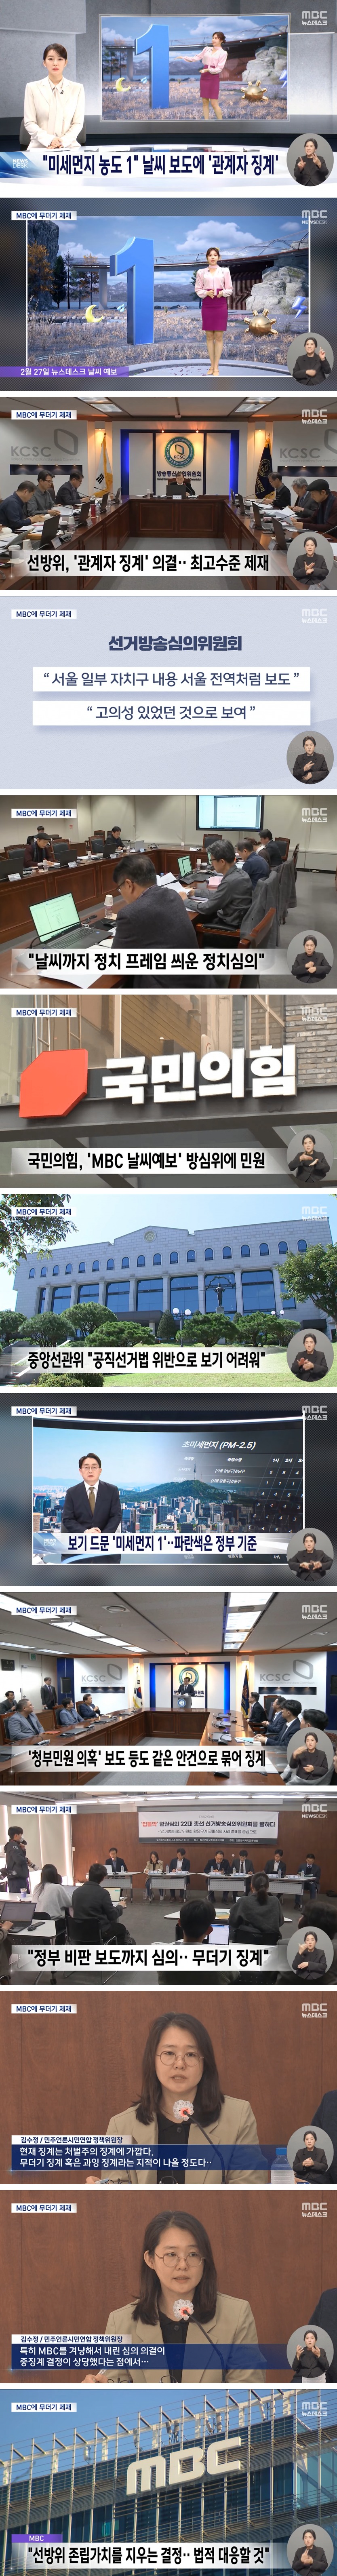 MBC 날씨 보도에 최고 수준 징계